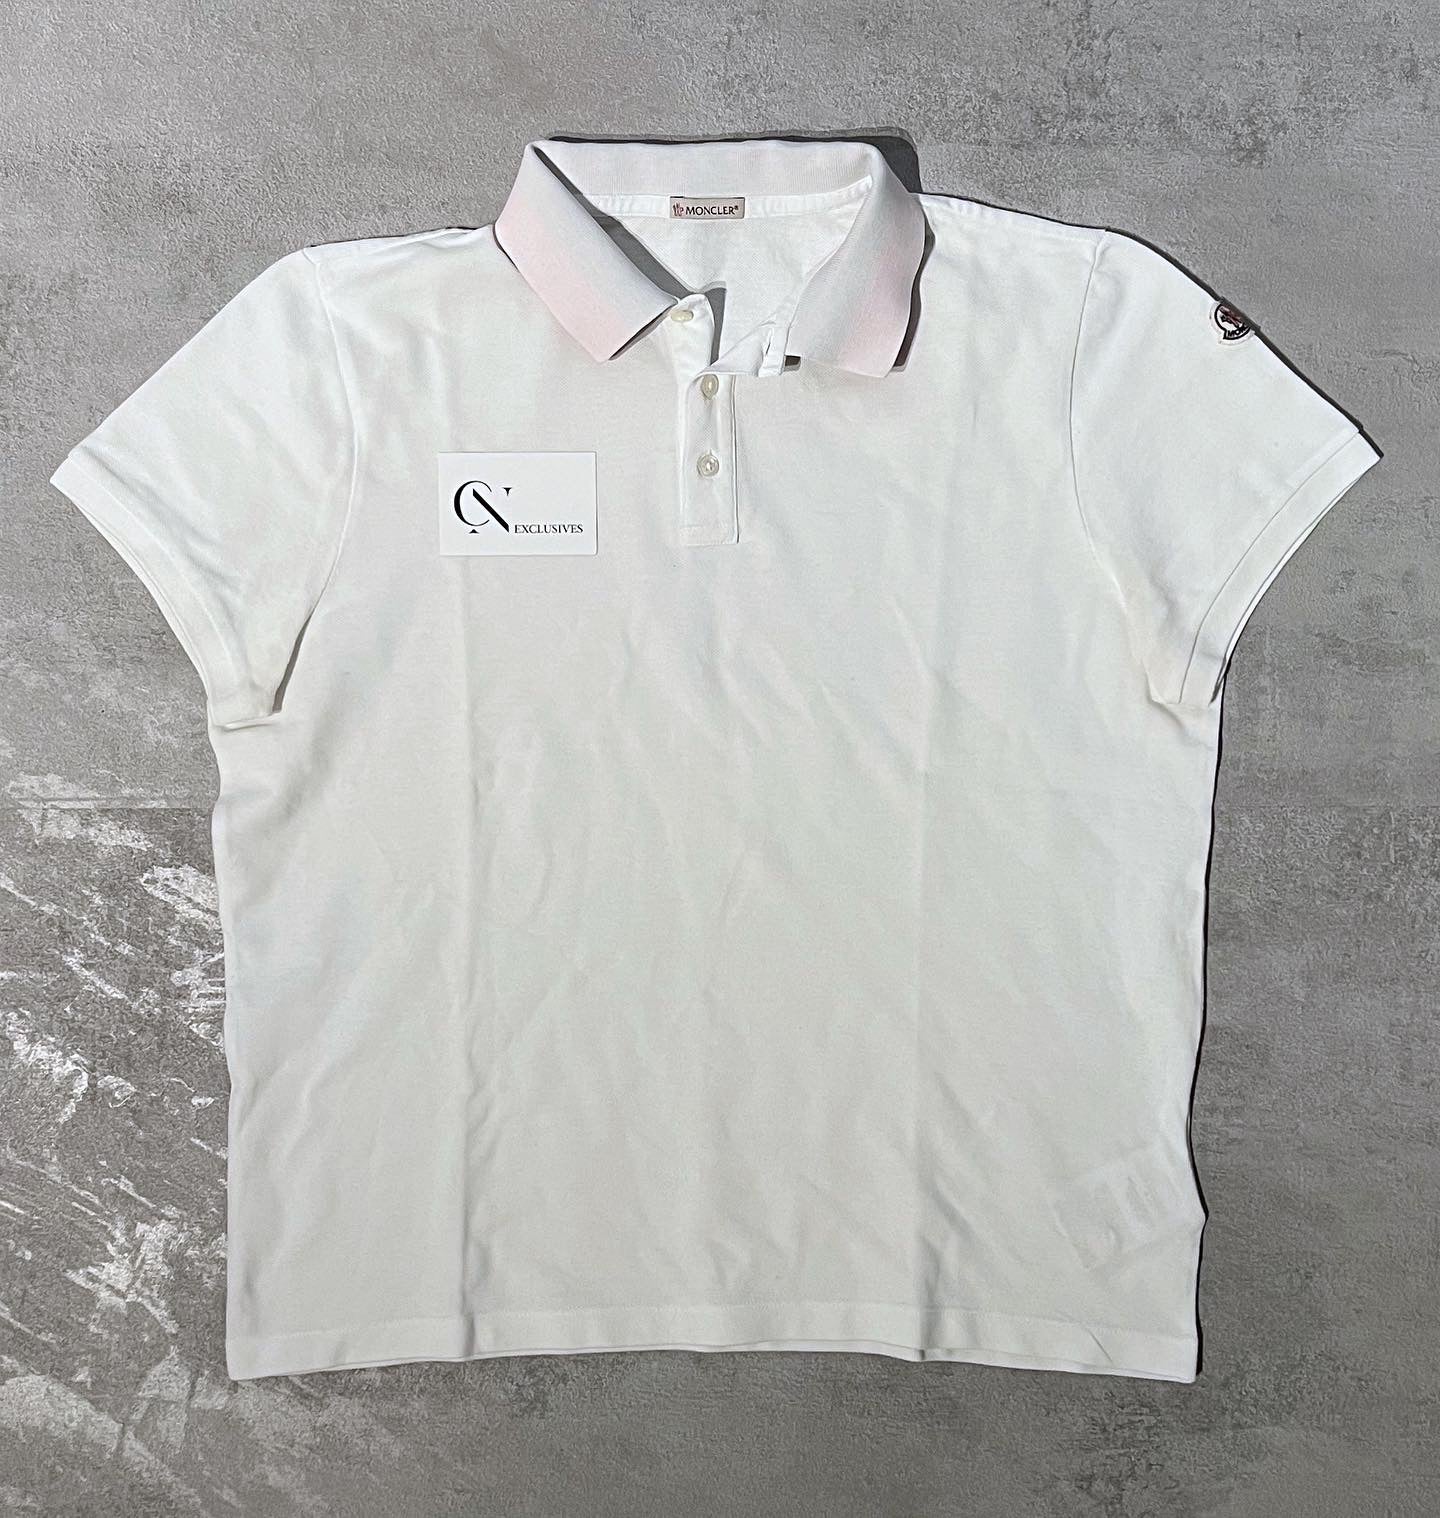 Polo Shirt - Size L